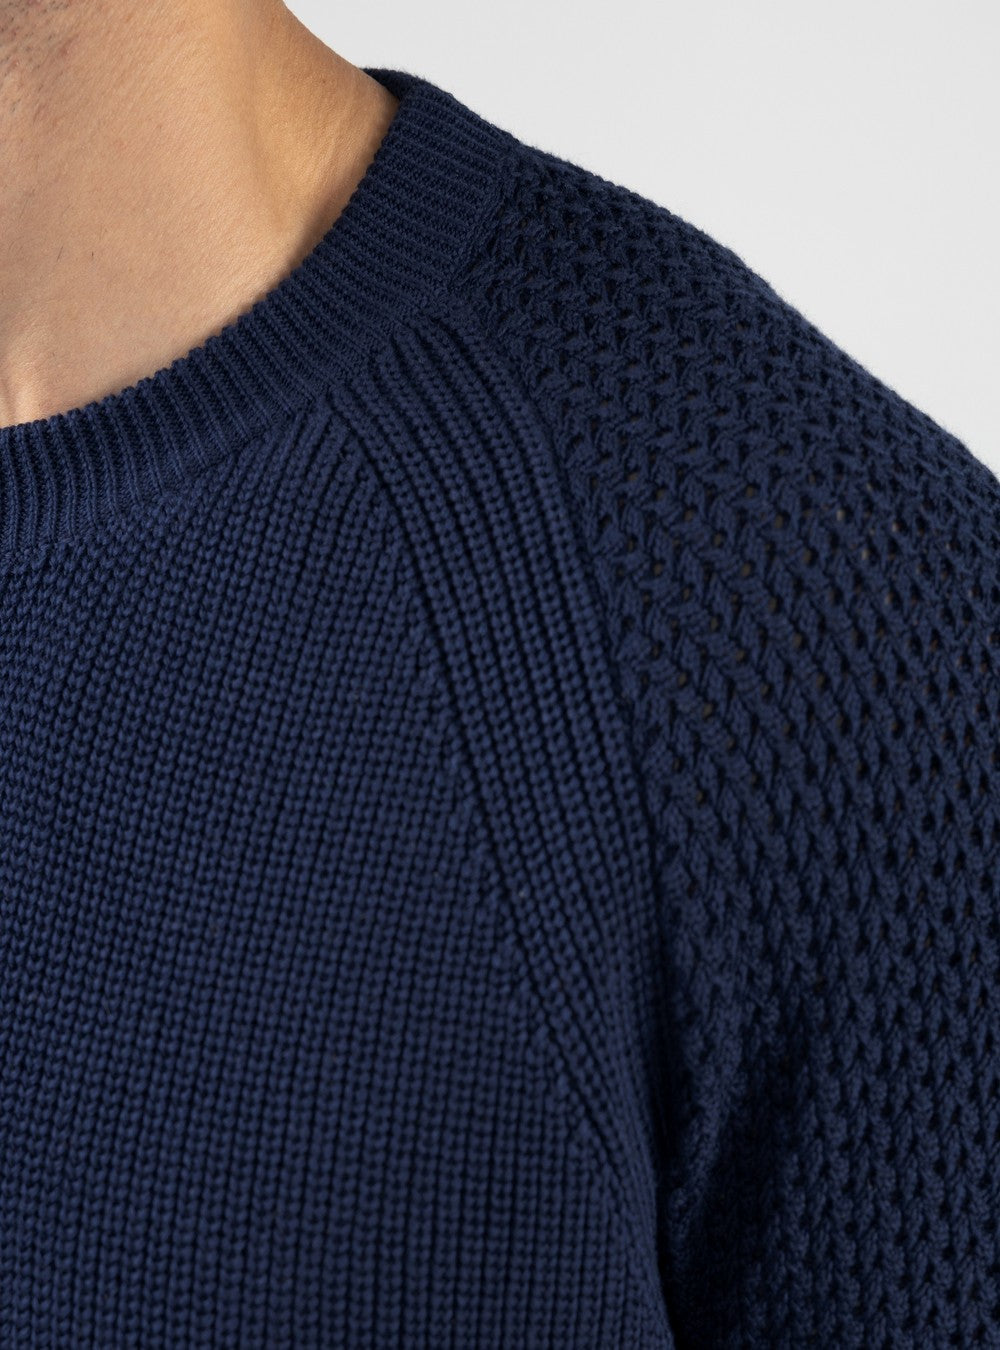 Oceanus Round Neck Sweater in Sea Island Cotton, Cobalt